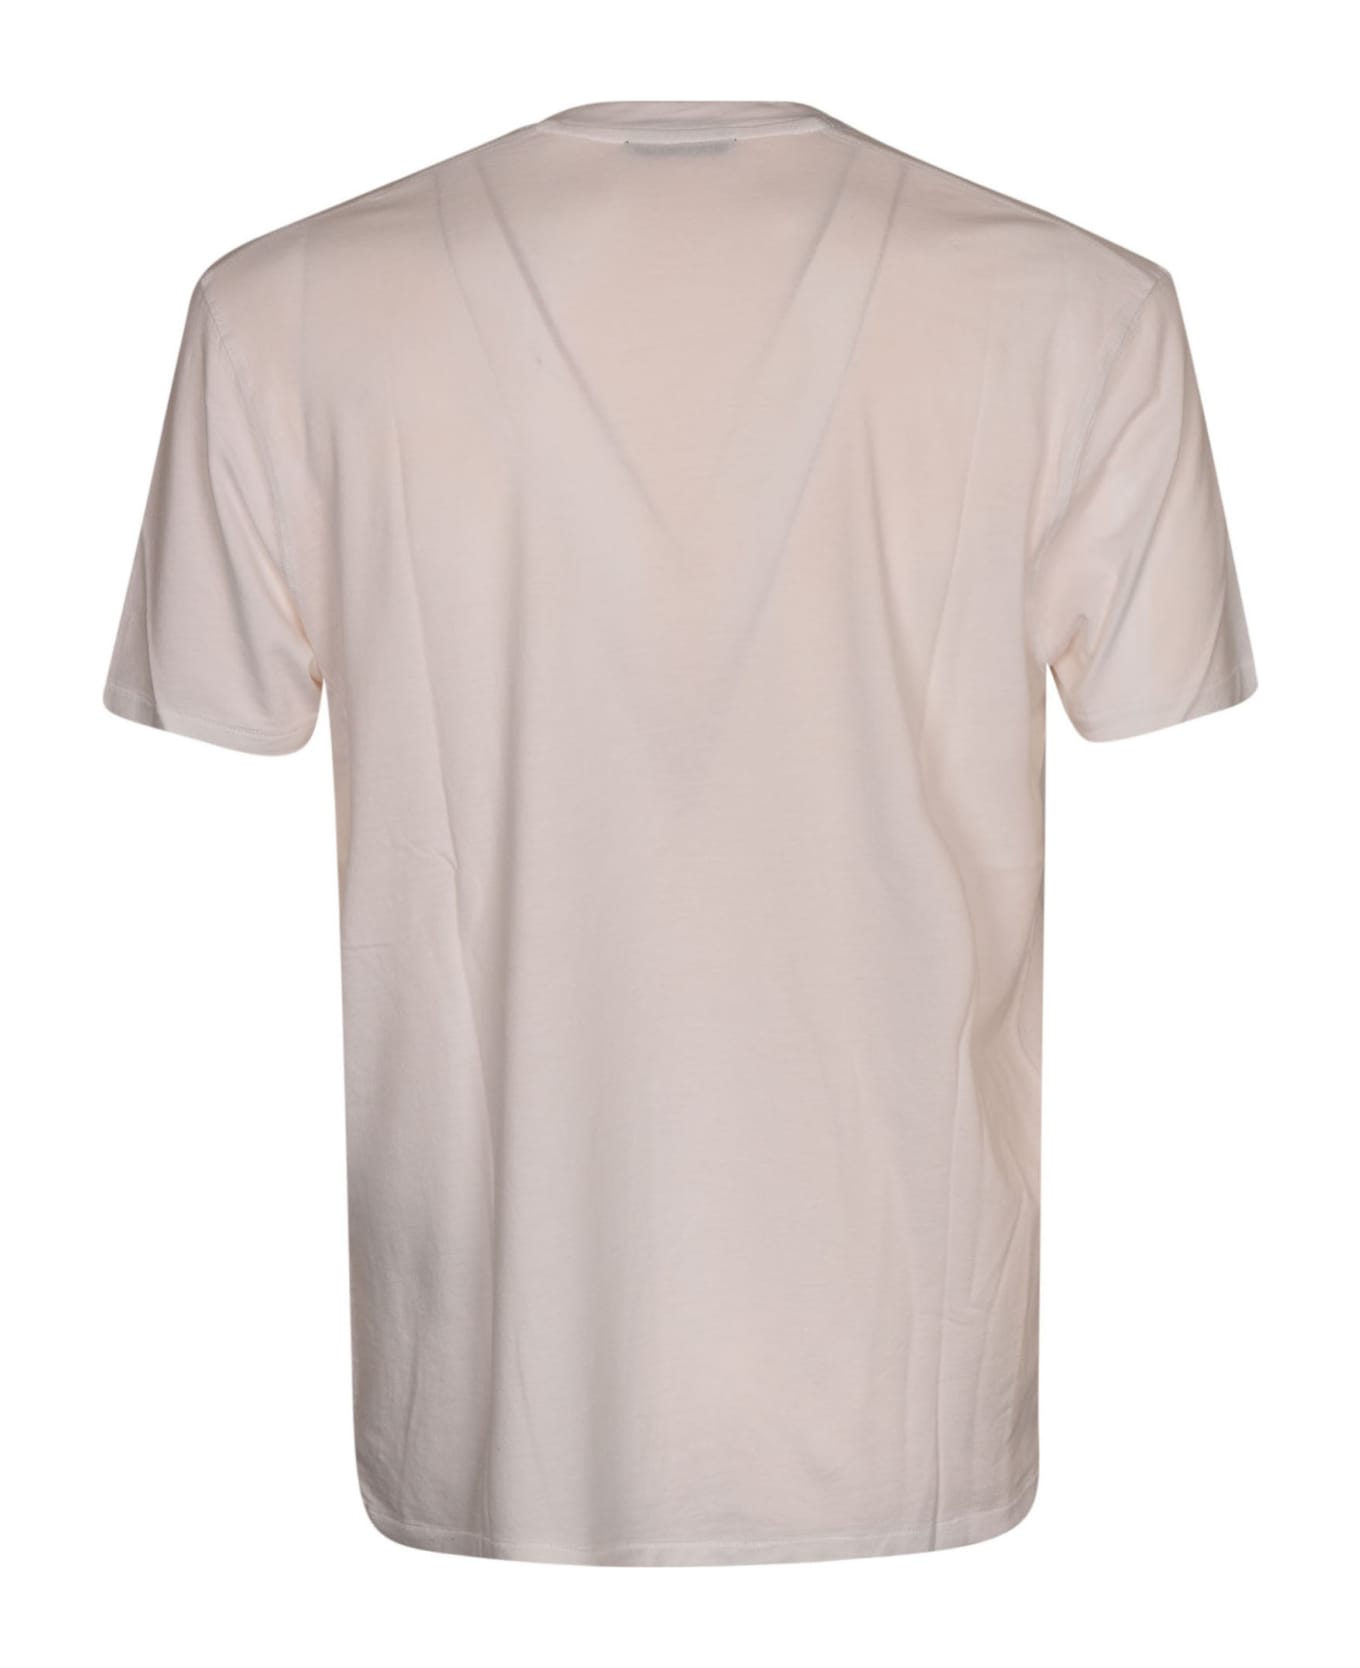 Tom Ford Regular Plain T-shirt - White